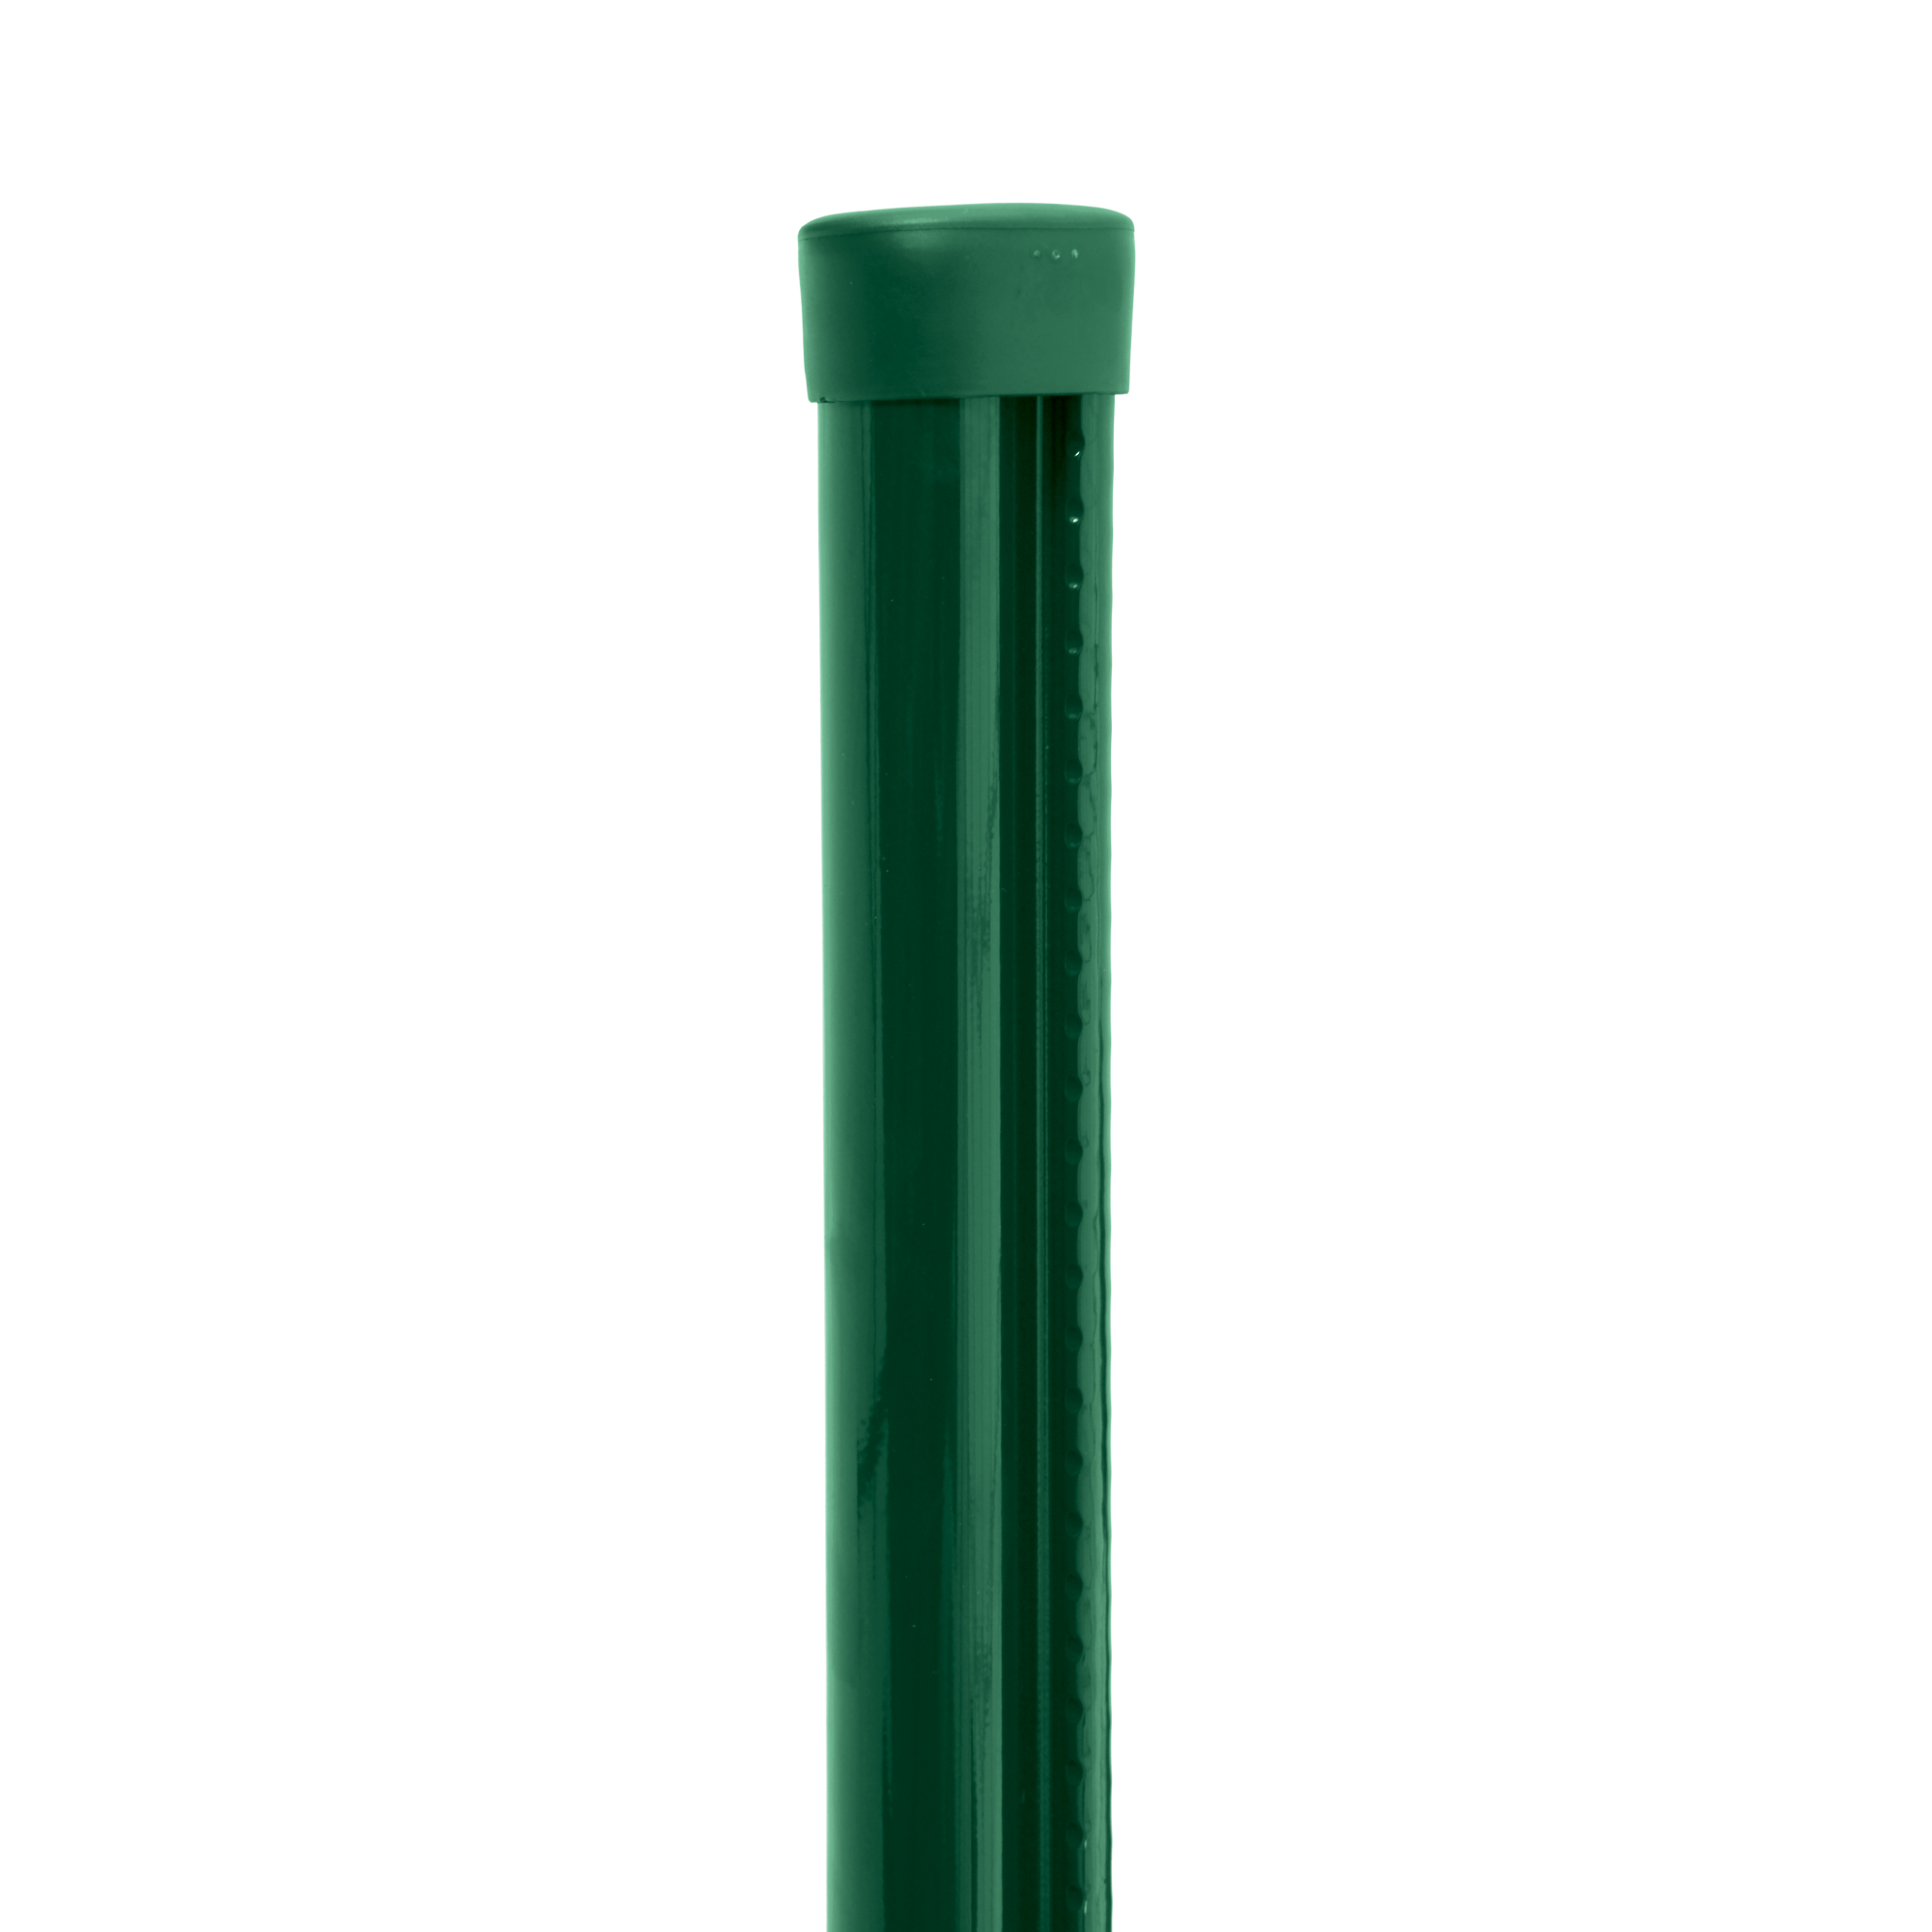 Sloupek kulatý s montážní lištou Pilclip Zn + PVC zelený průměr 48 mm výška 1